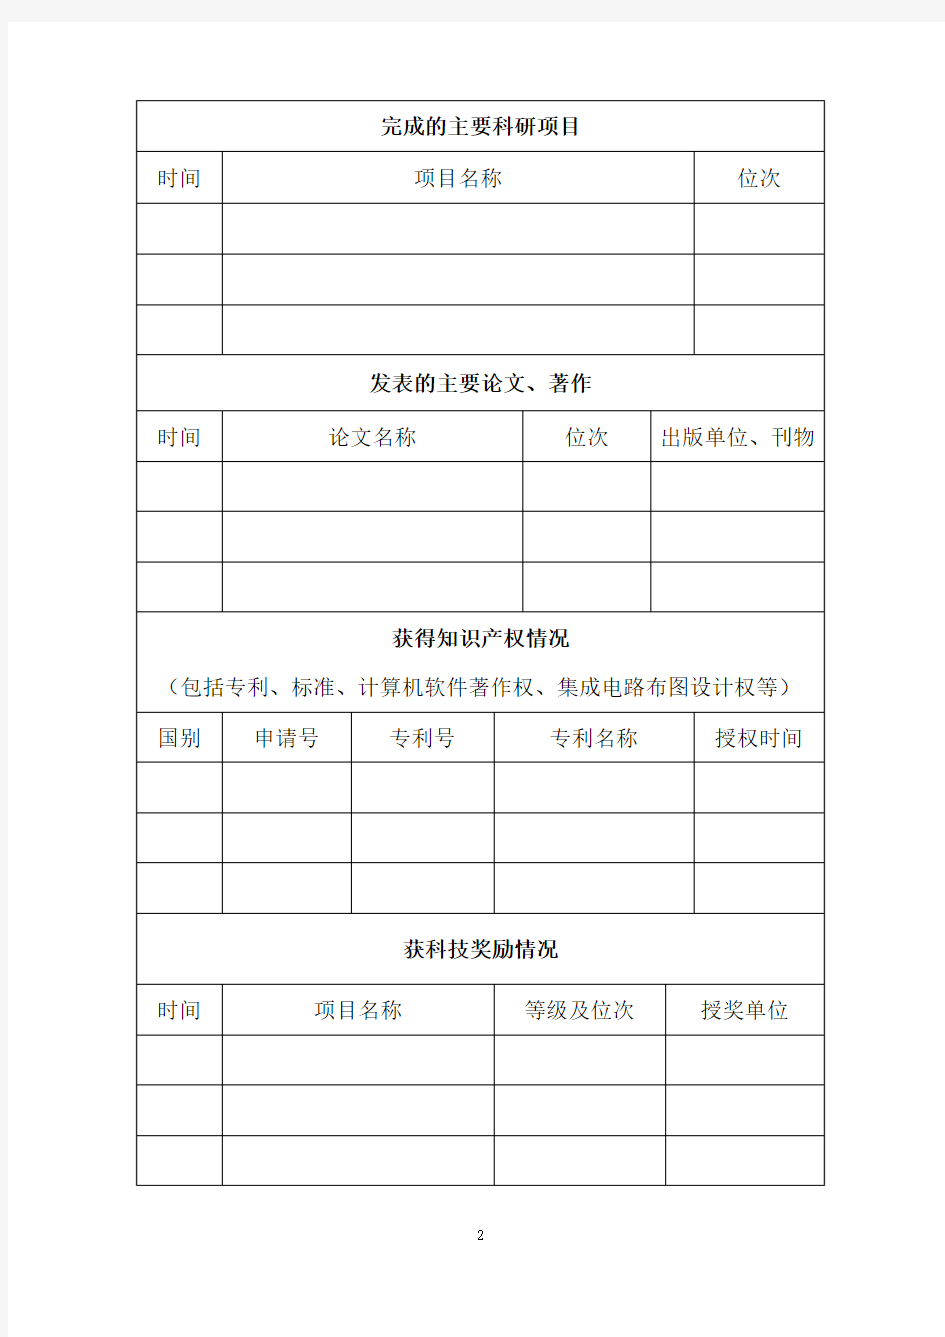 中国煤炭工业协会煤炭工业科技创新人才推荐表